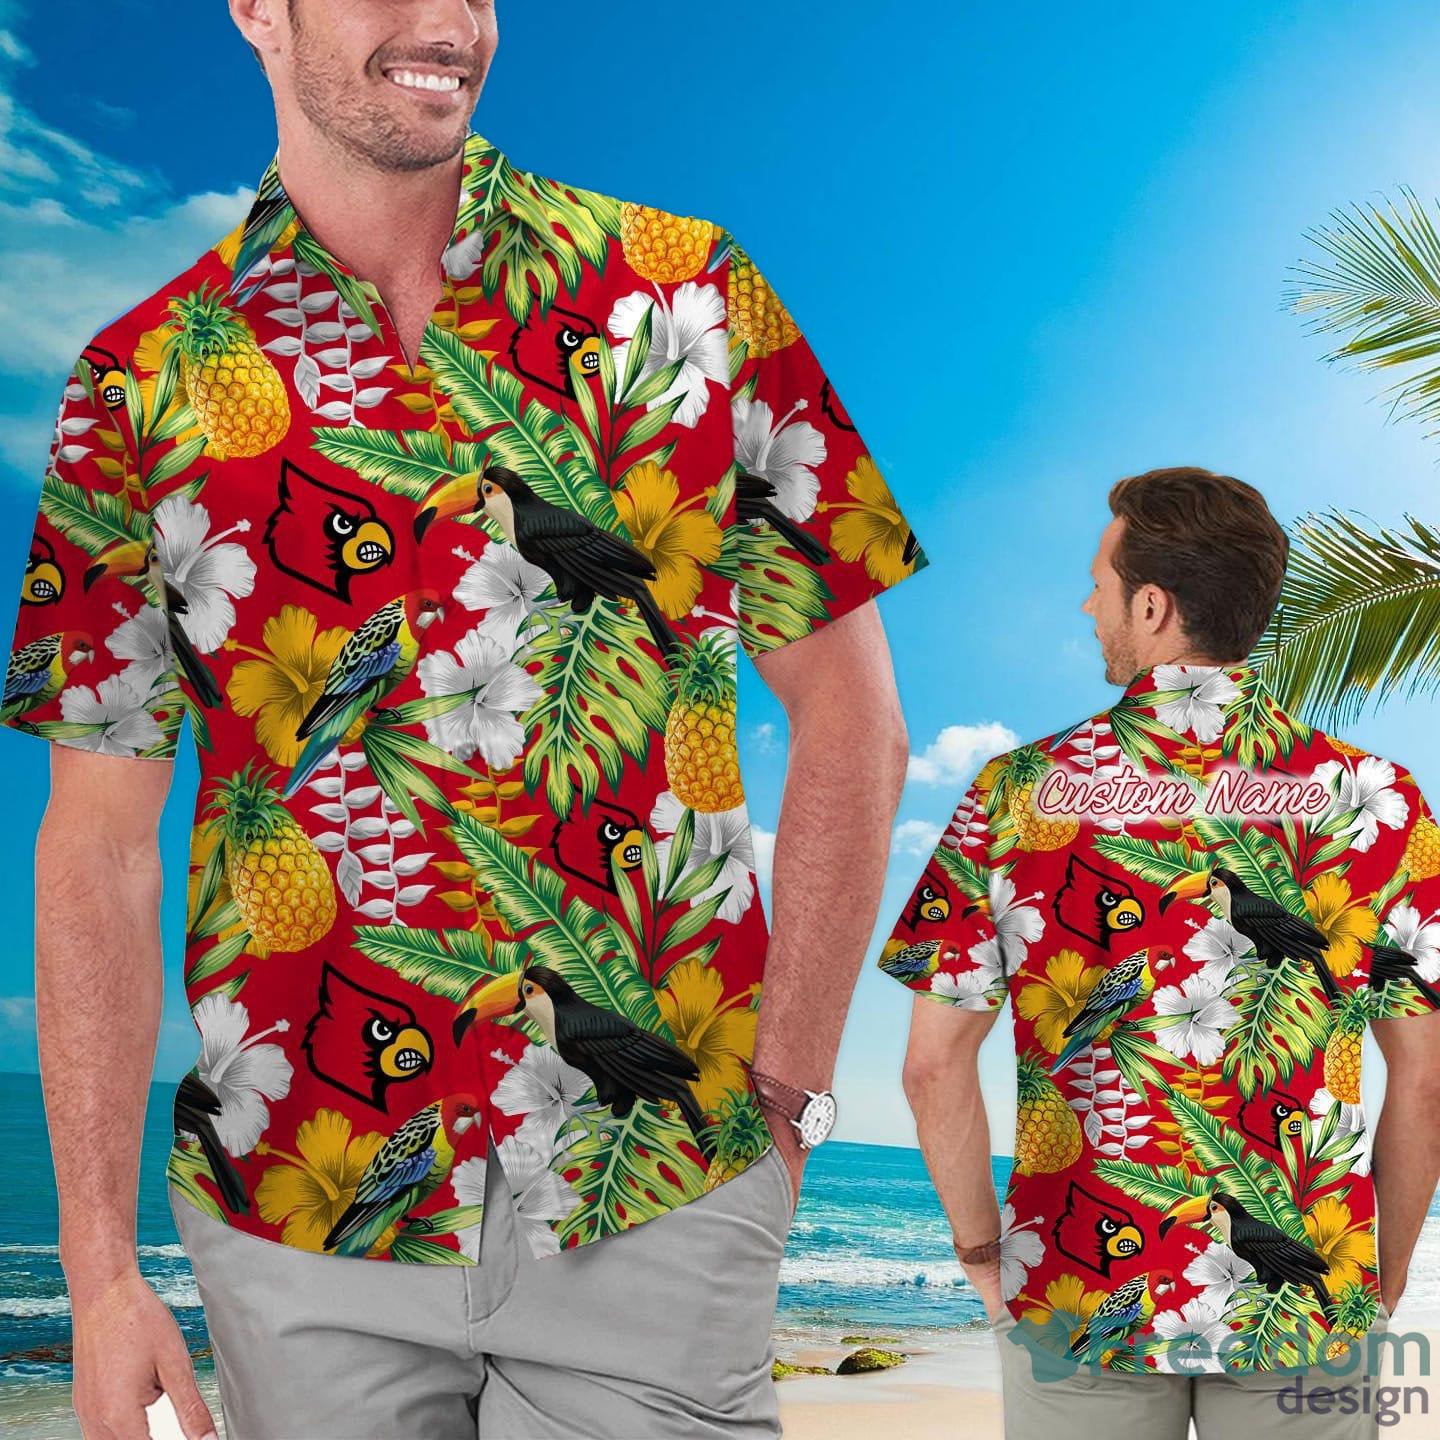 Louisville Cardinals Tropical Floral Custom Name Aloha Hawaiian Shirt